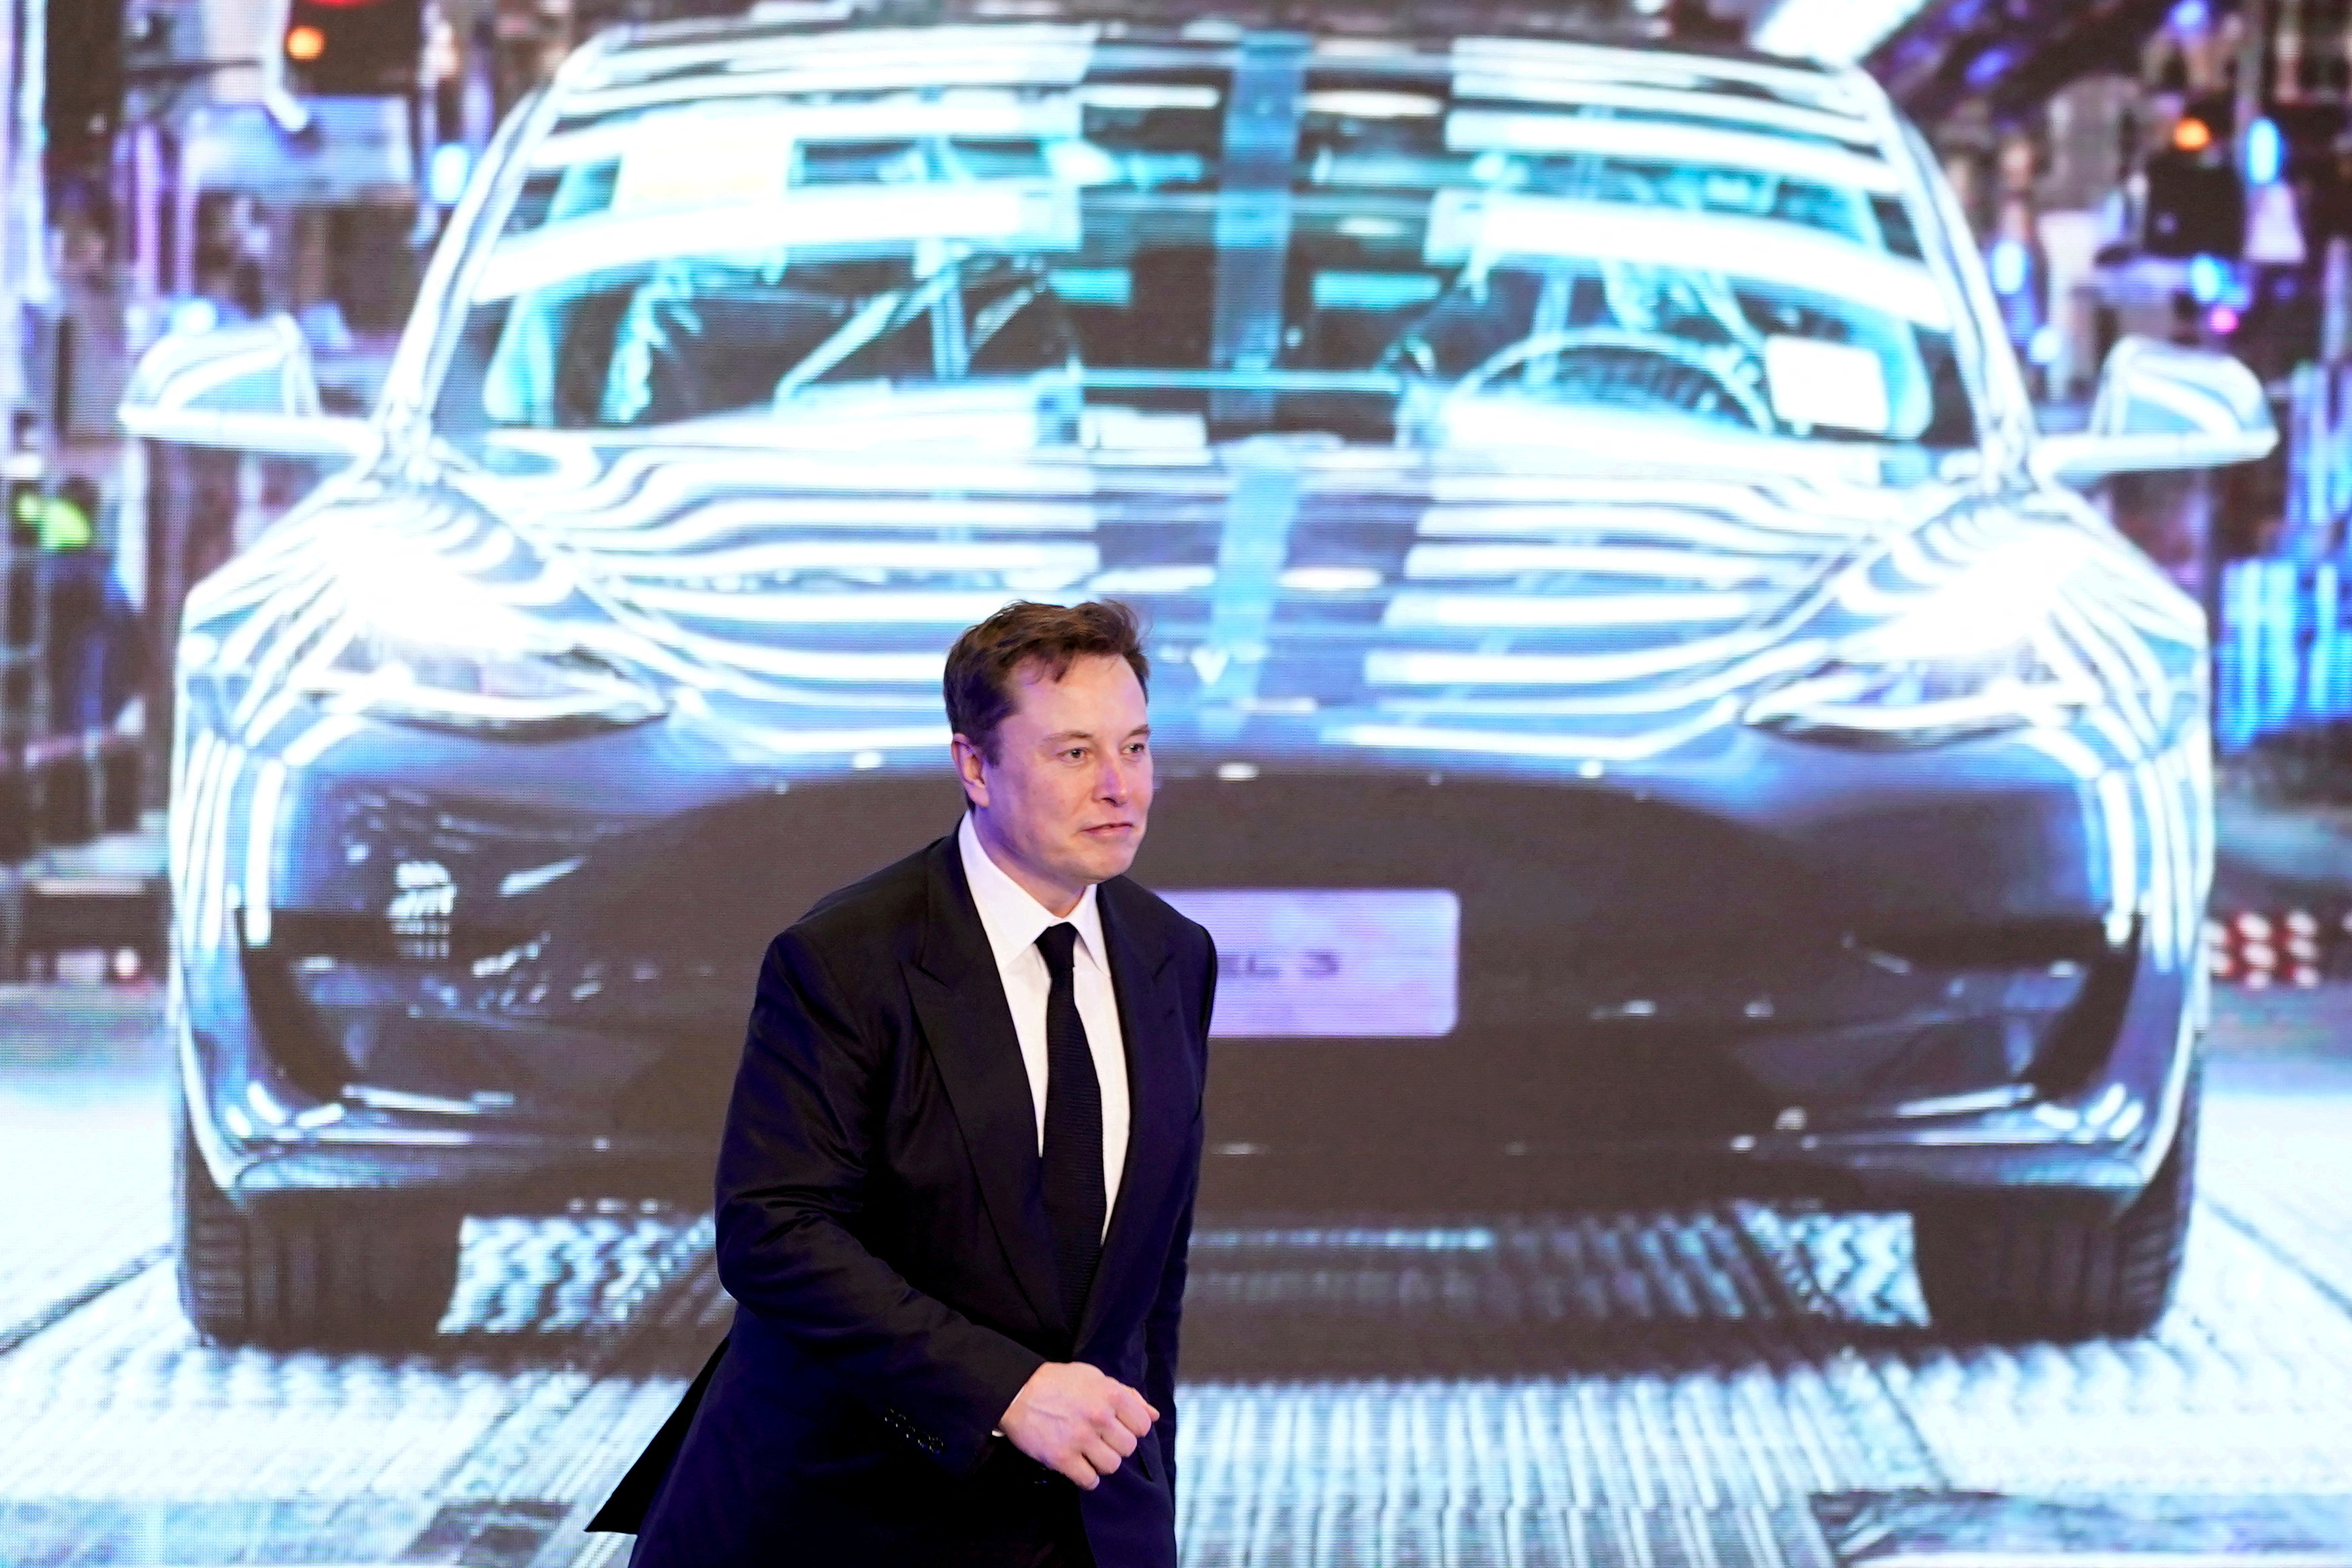 Major Tesla investor says Elon Musk threw TSLA shareholders under the bus to buy Twitter